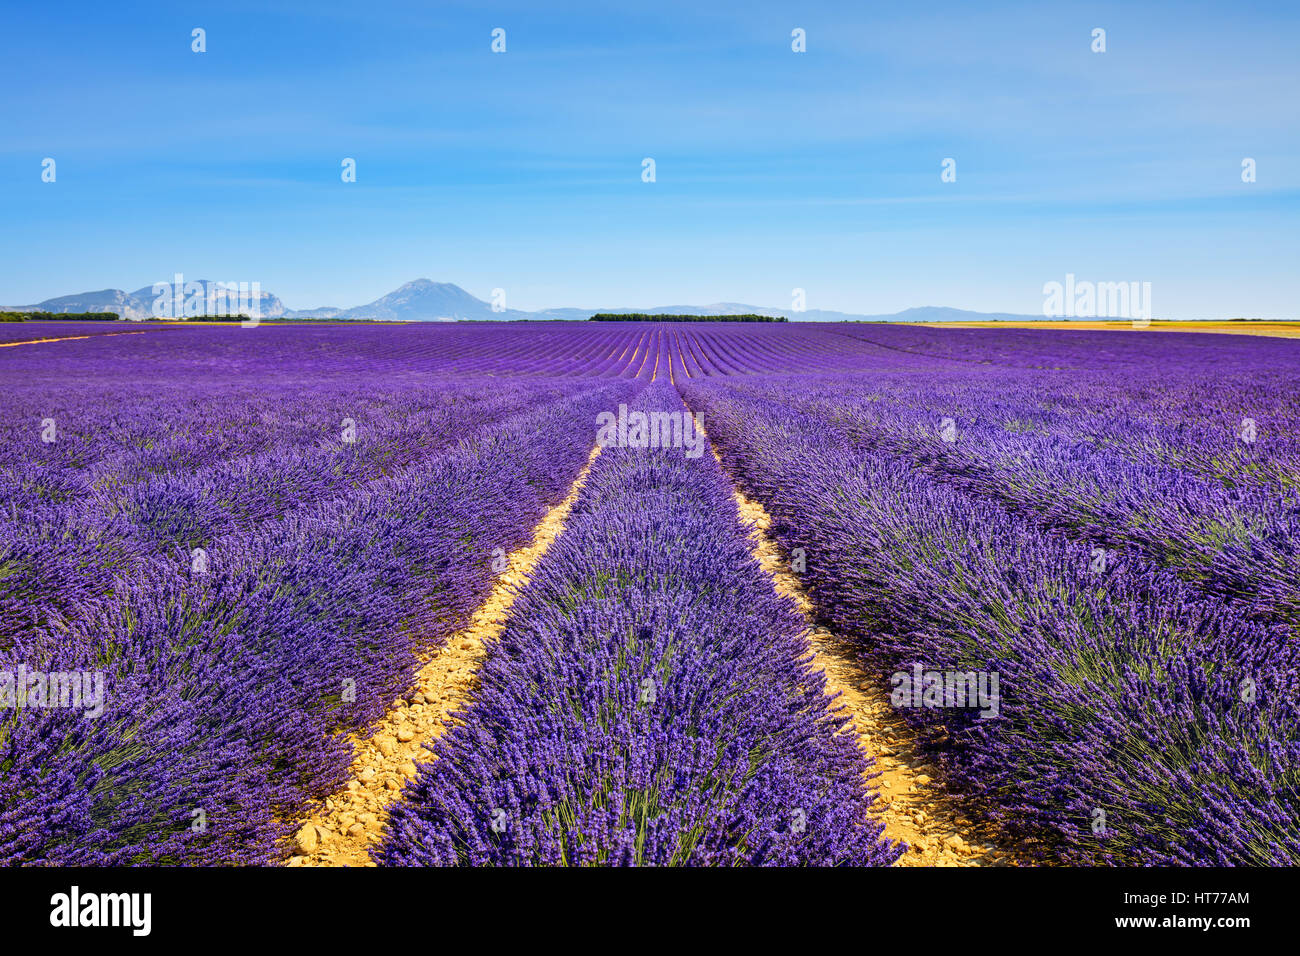 Blume, Lavendel duftenden Felder in endlosen Reihen und Bäume im Hintergrund. Plateau von Valensole, Provence, Frankreich. Stockfoto